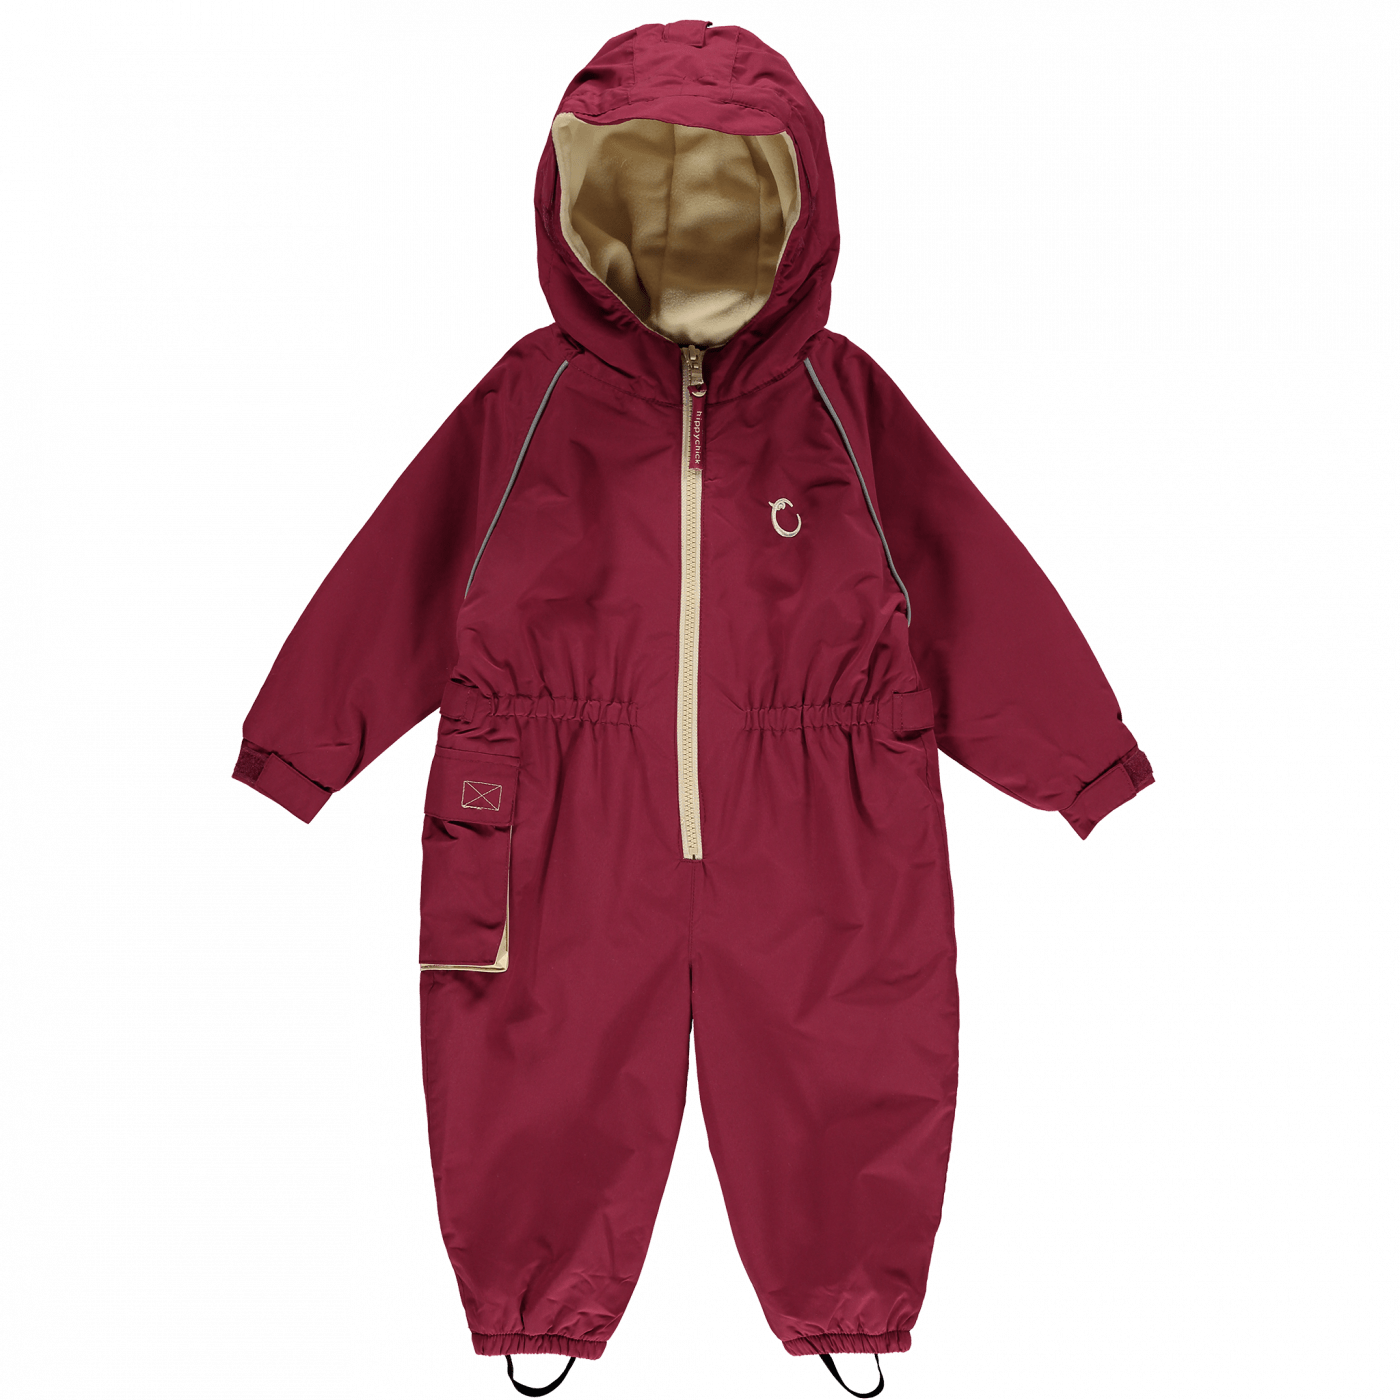 Hippychick Toddler Waterproof Fleece Lined Suit